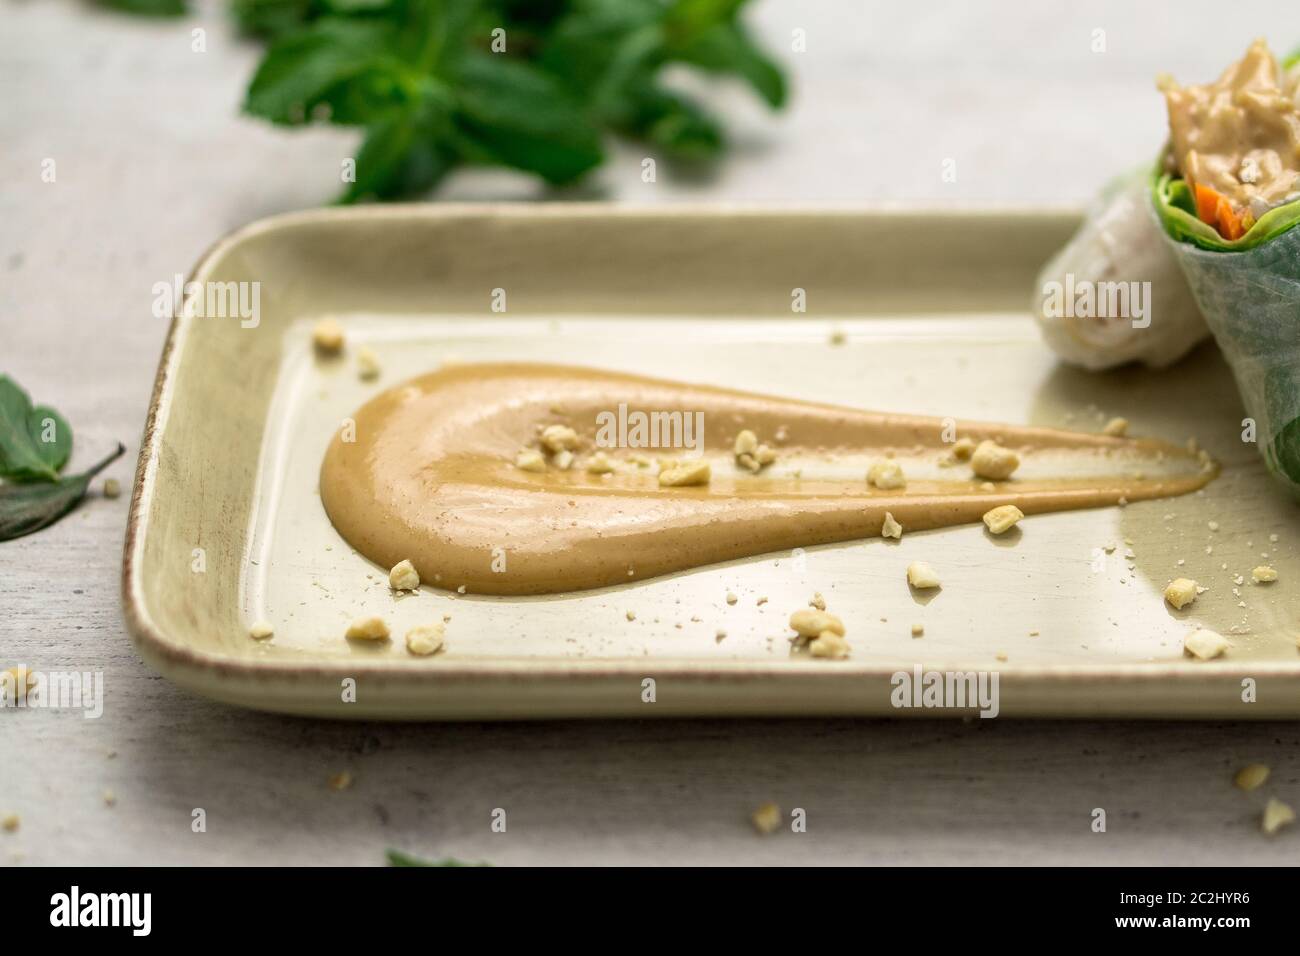 Deliziosa salsa cremosa di burro di arachidi su un piatto con croccanti briciole di arachidi e involtini di primavera vietnamiti sul lato. La salsa al burro di arachidi è morbida Foto Stock